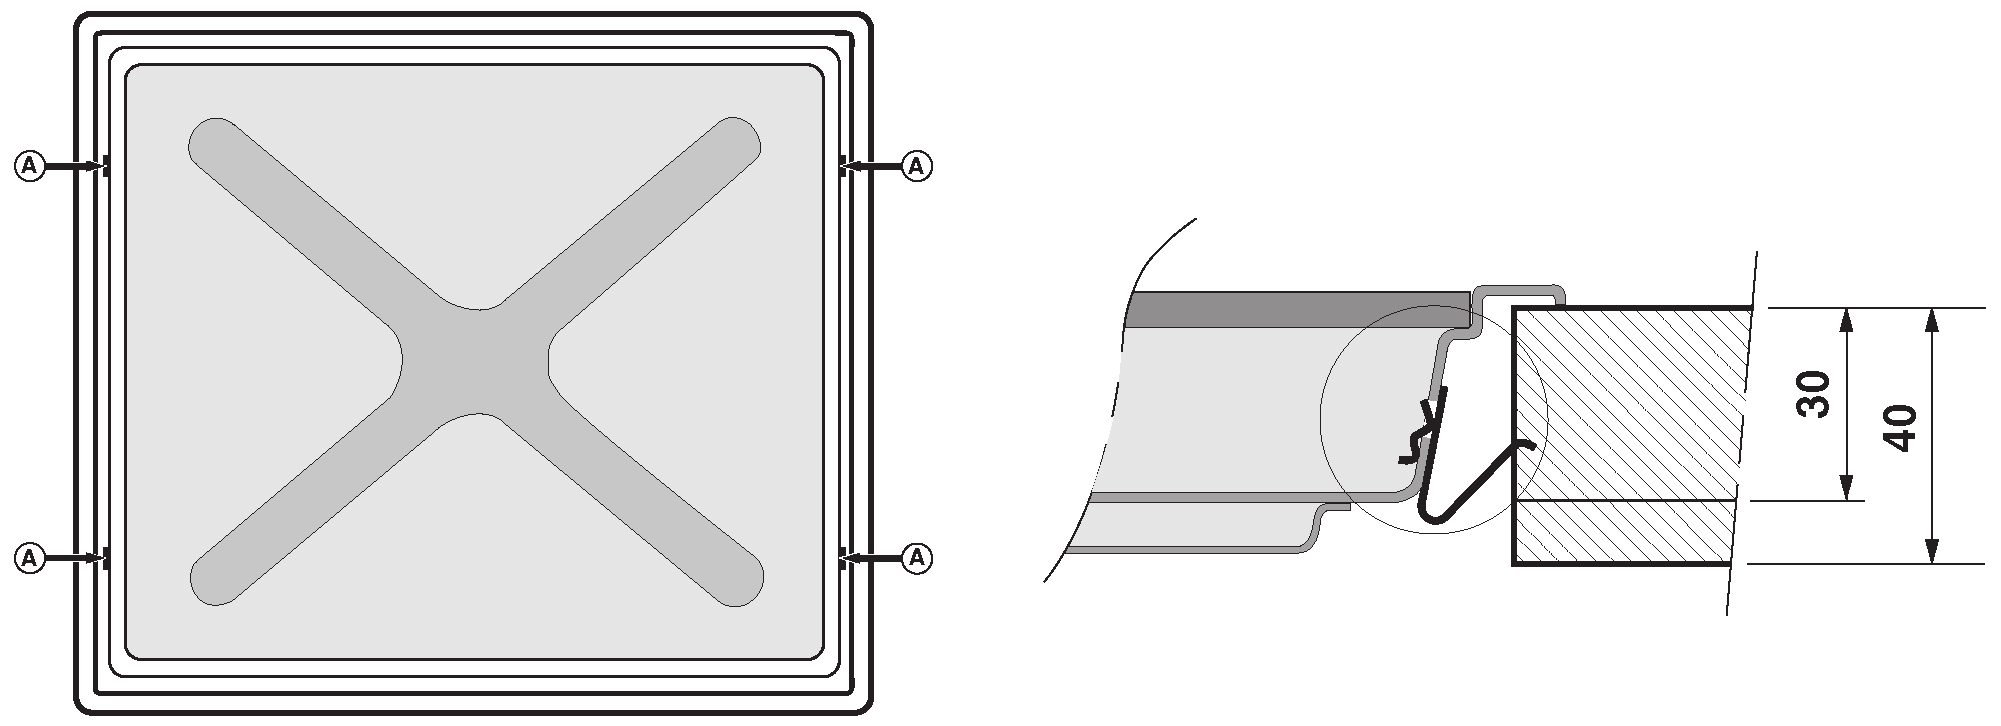 Rozměry a poloha výřezu jsou znázorněny na obrázku. Uvedené rozměry je nutno přesně dodržet, neboť nesprávně zabudované zařízení může způsobovat přehřívání okolní plochy.